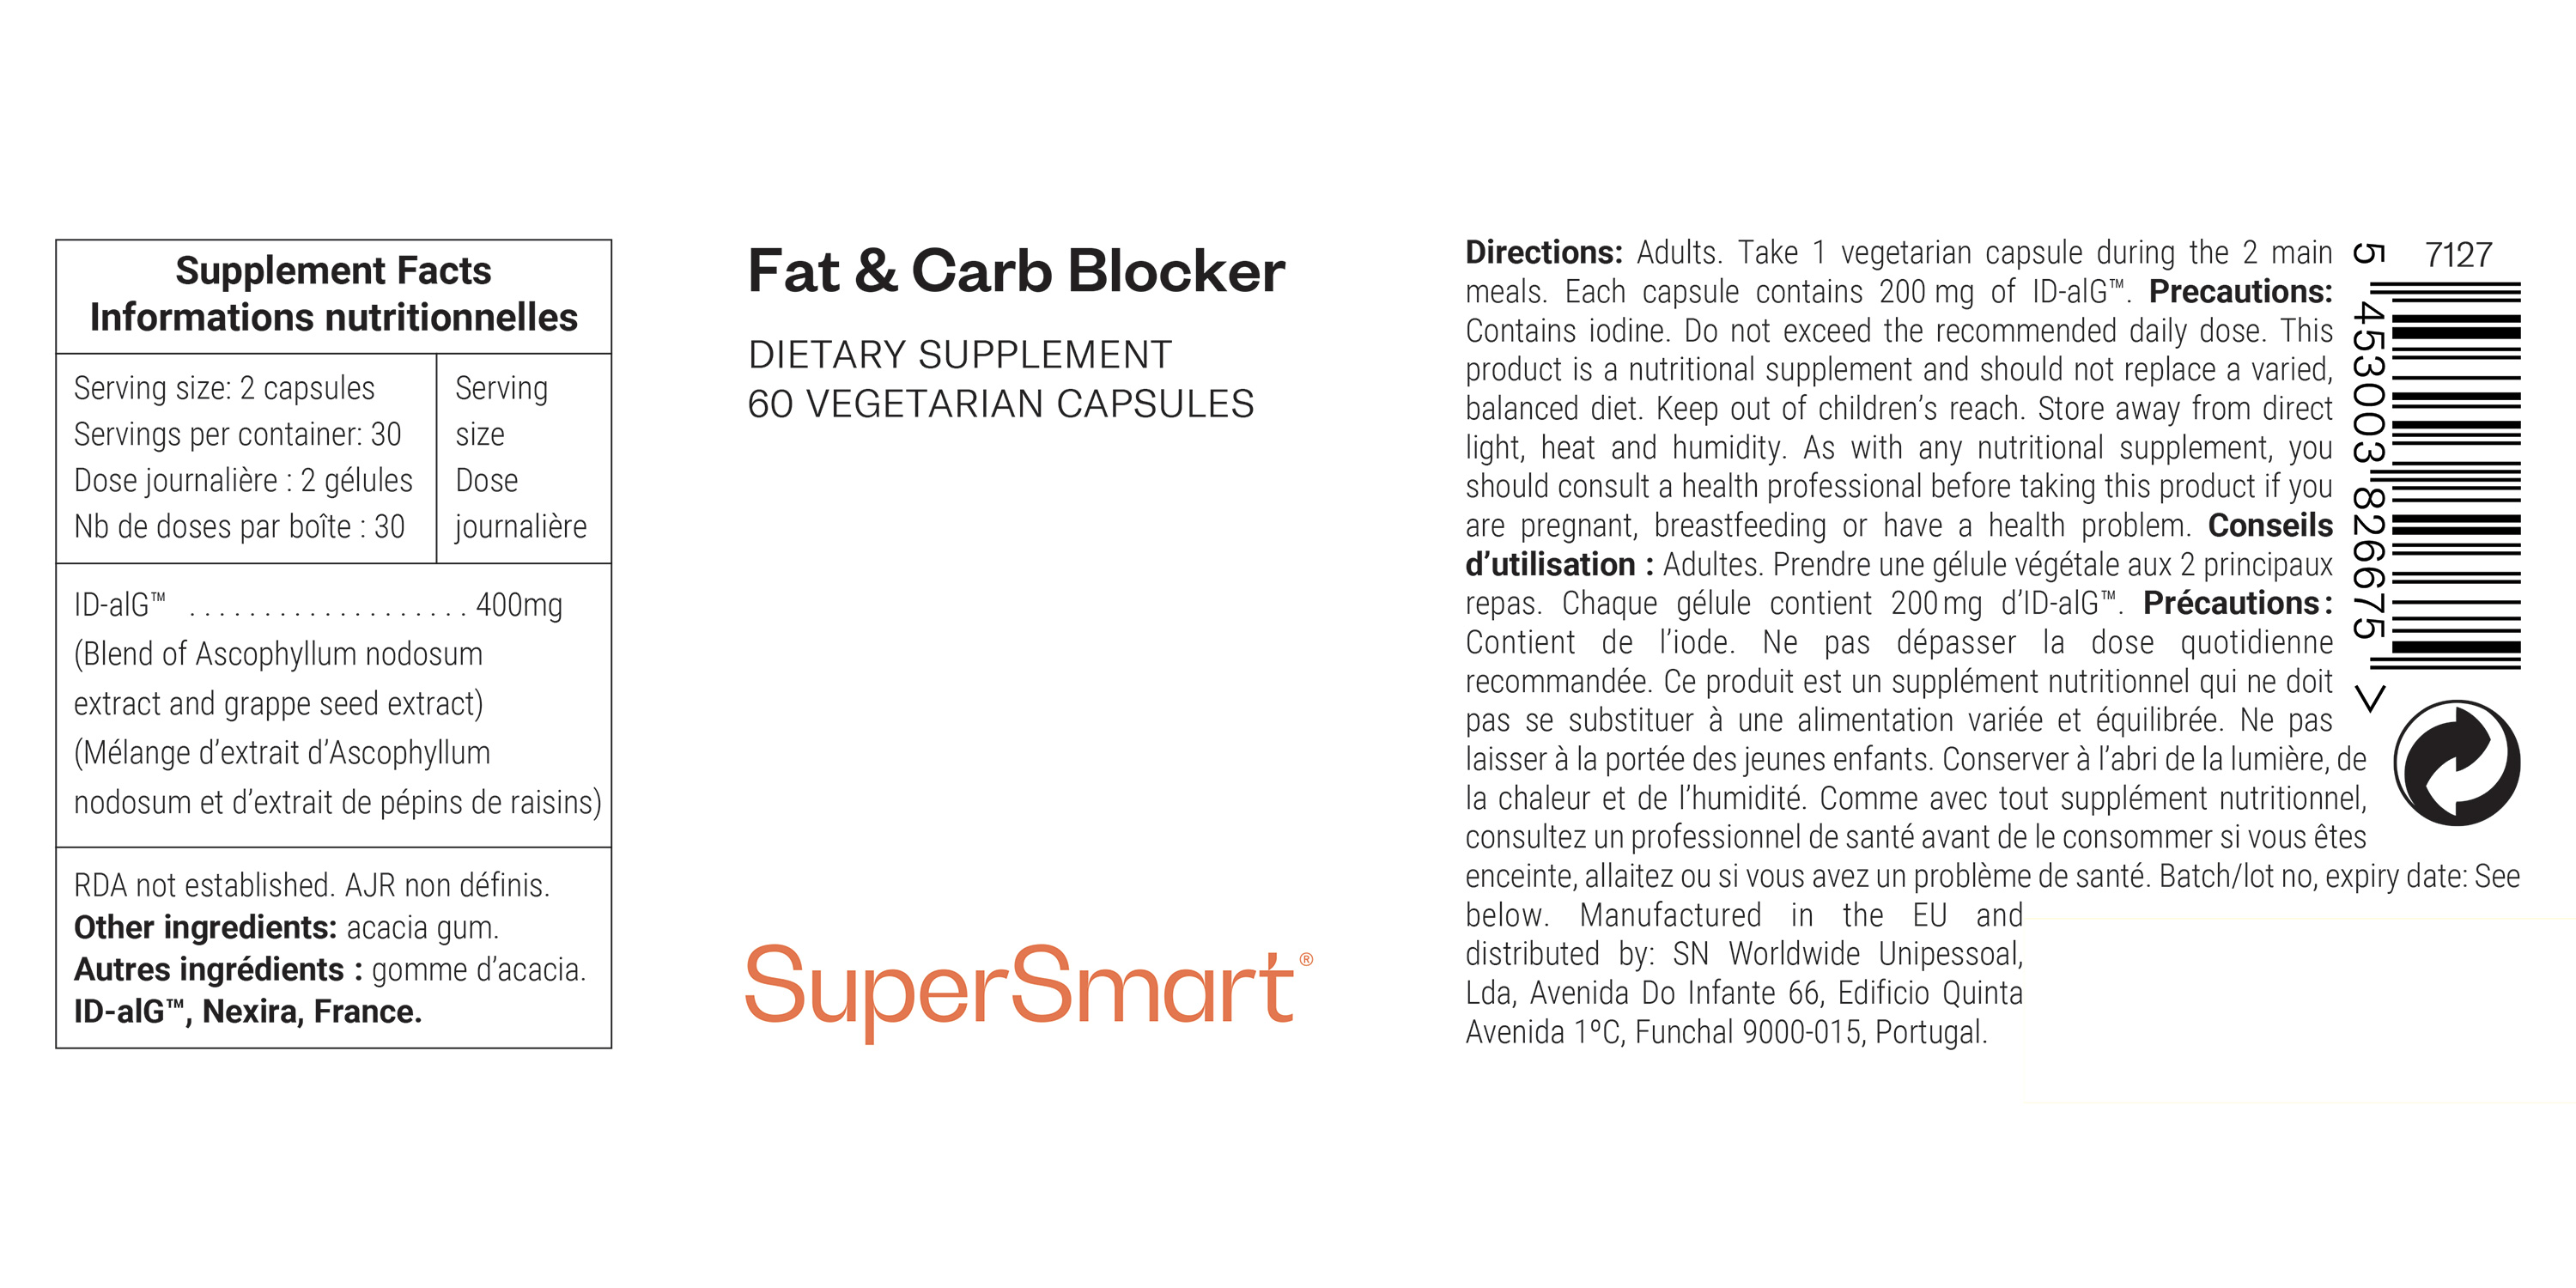 Fat & Carb Blocker Supplement